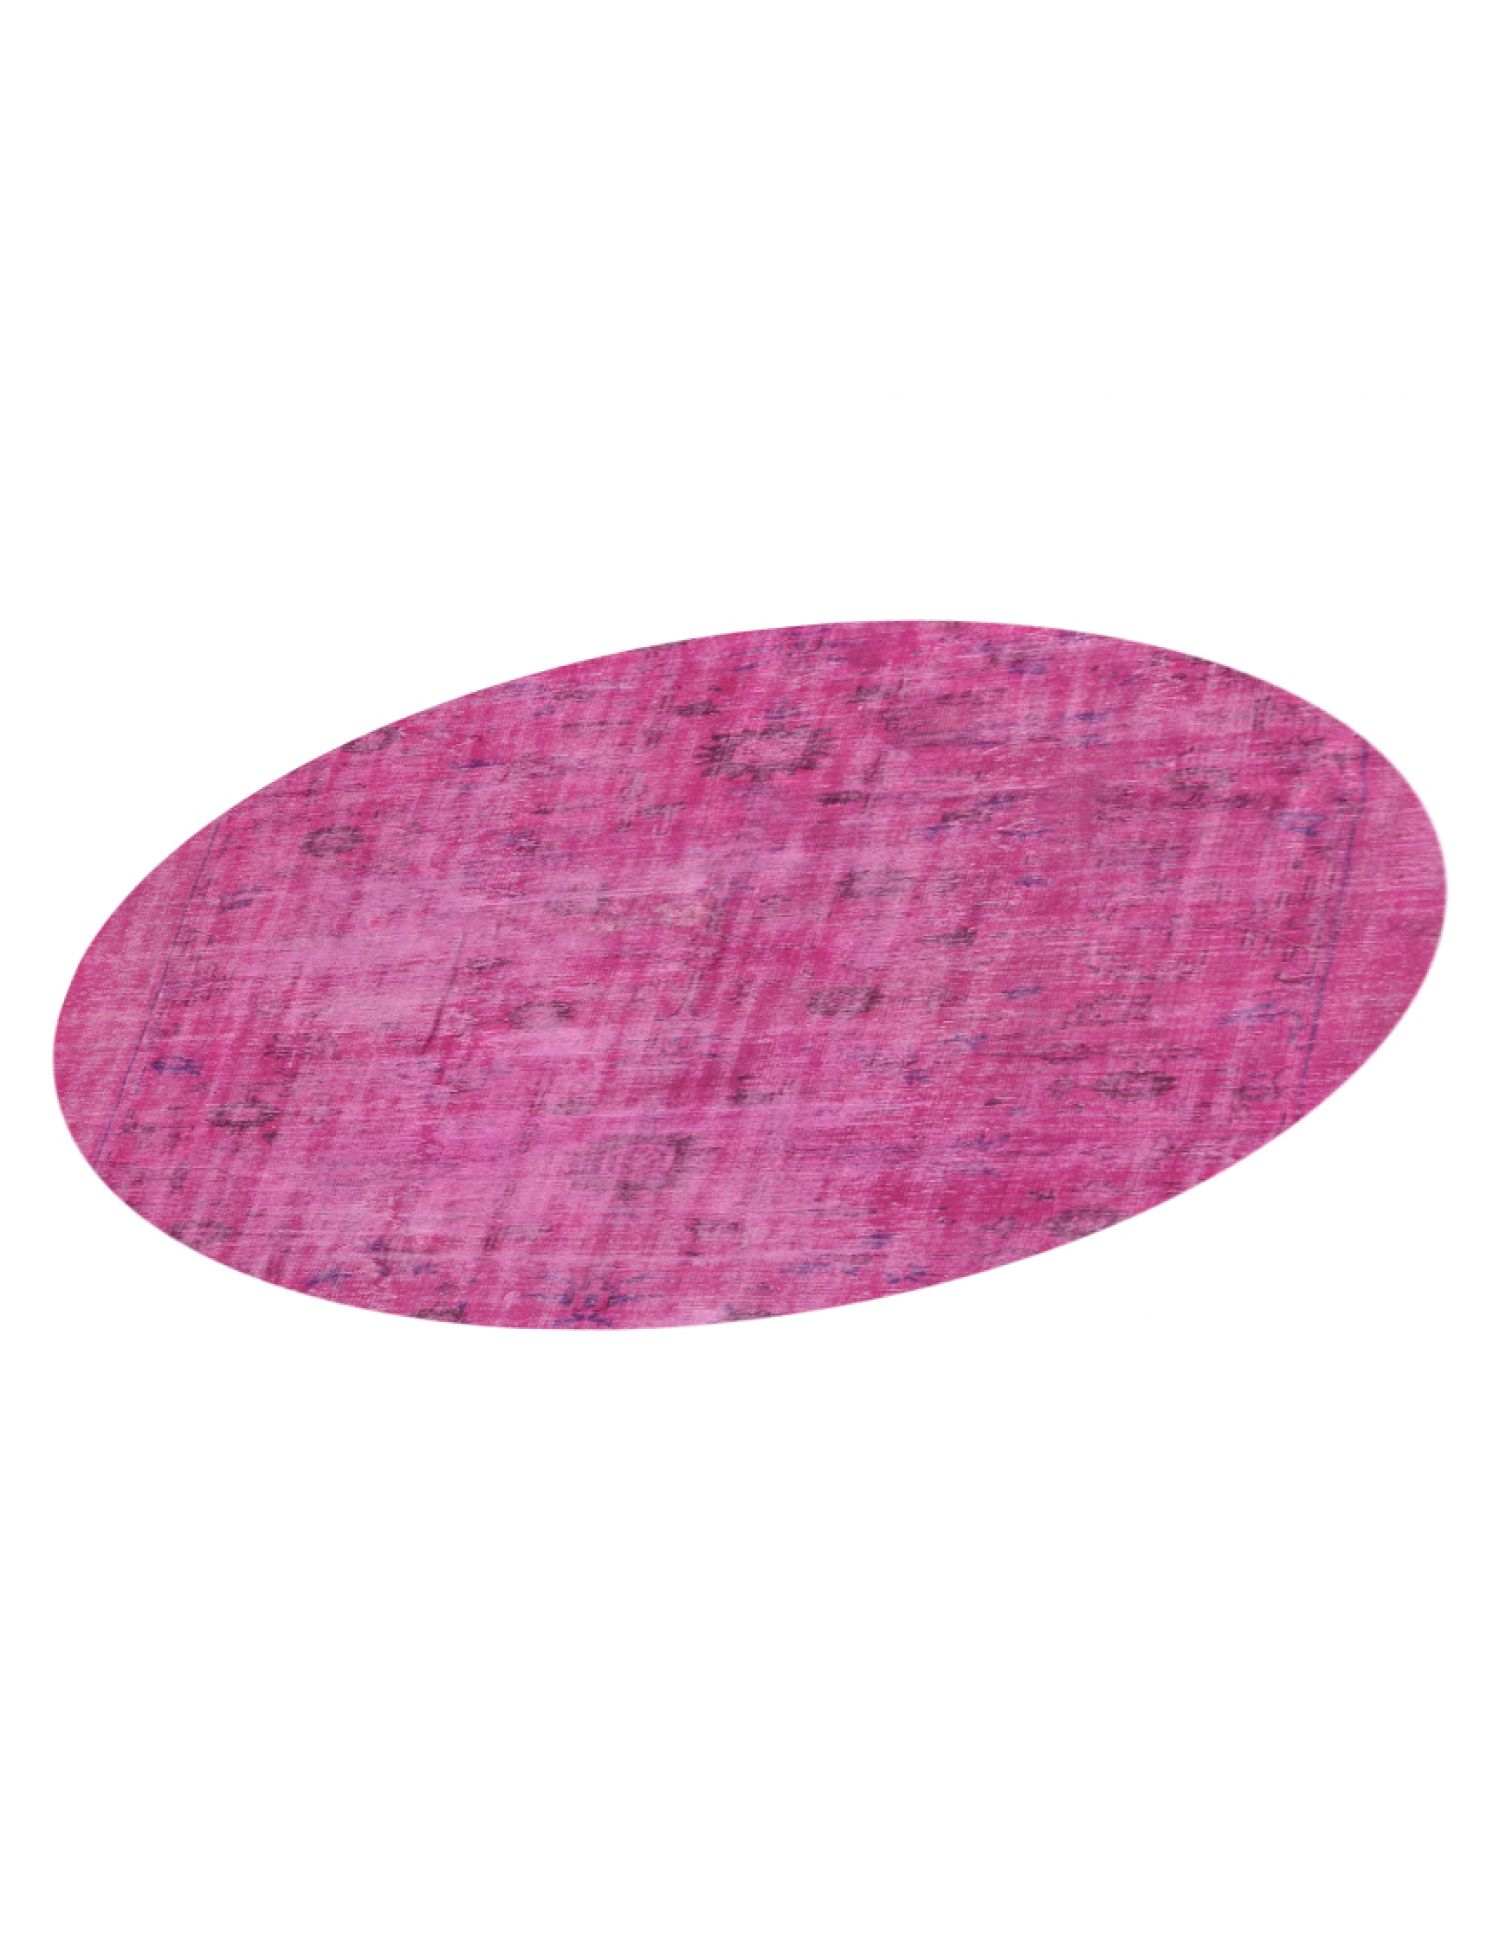 Vintage Teppich rund  rosa <br/>252 x 252 cm